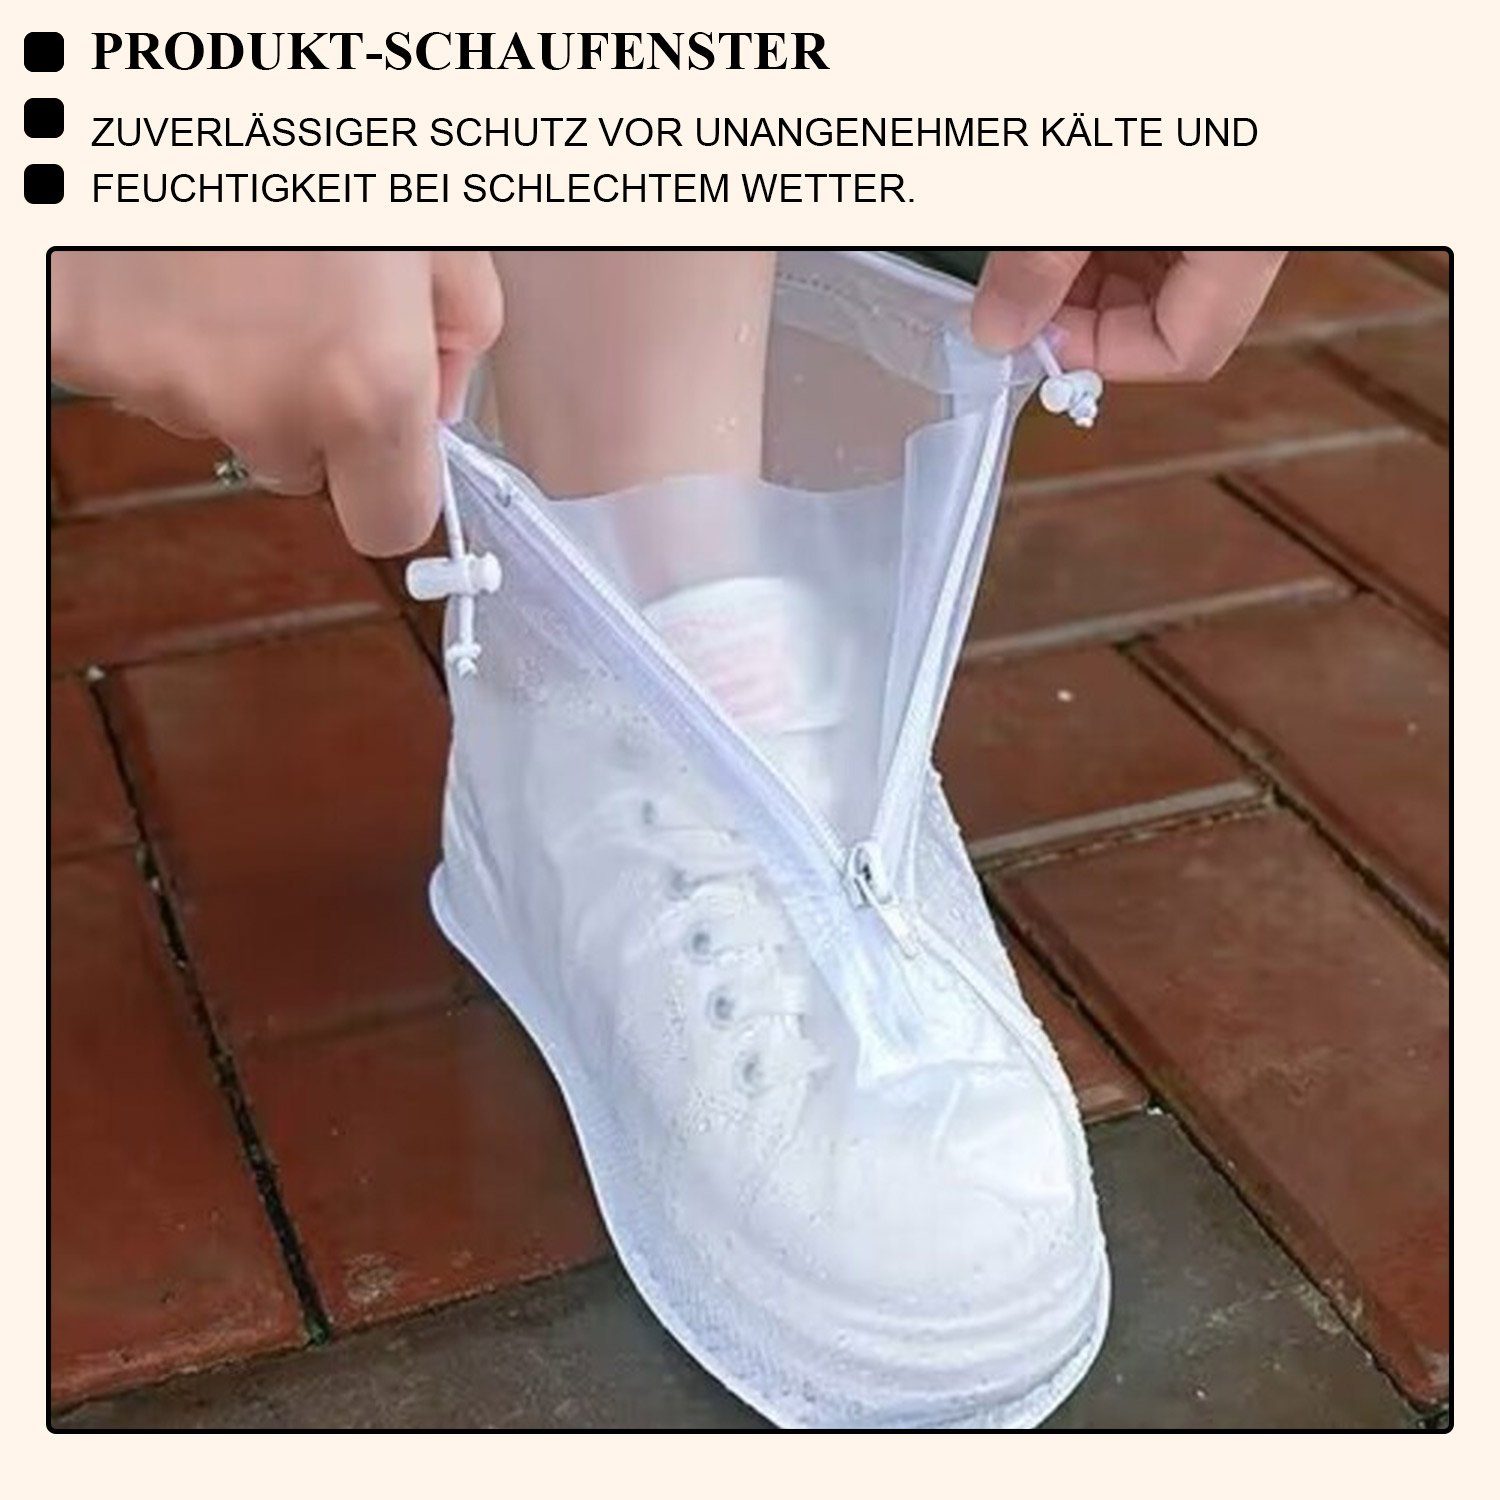 Daisred Schuhüberzieher Weiß Regenschutz Überzieher Schuhe Wasserdicht